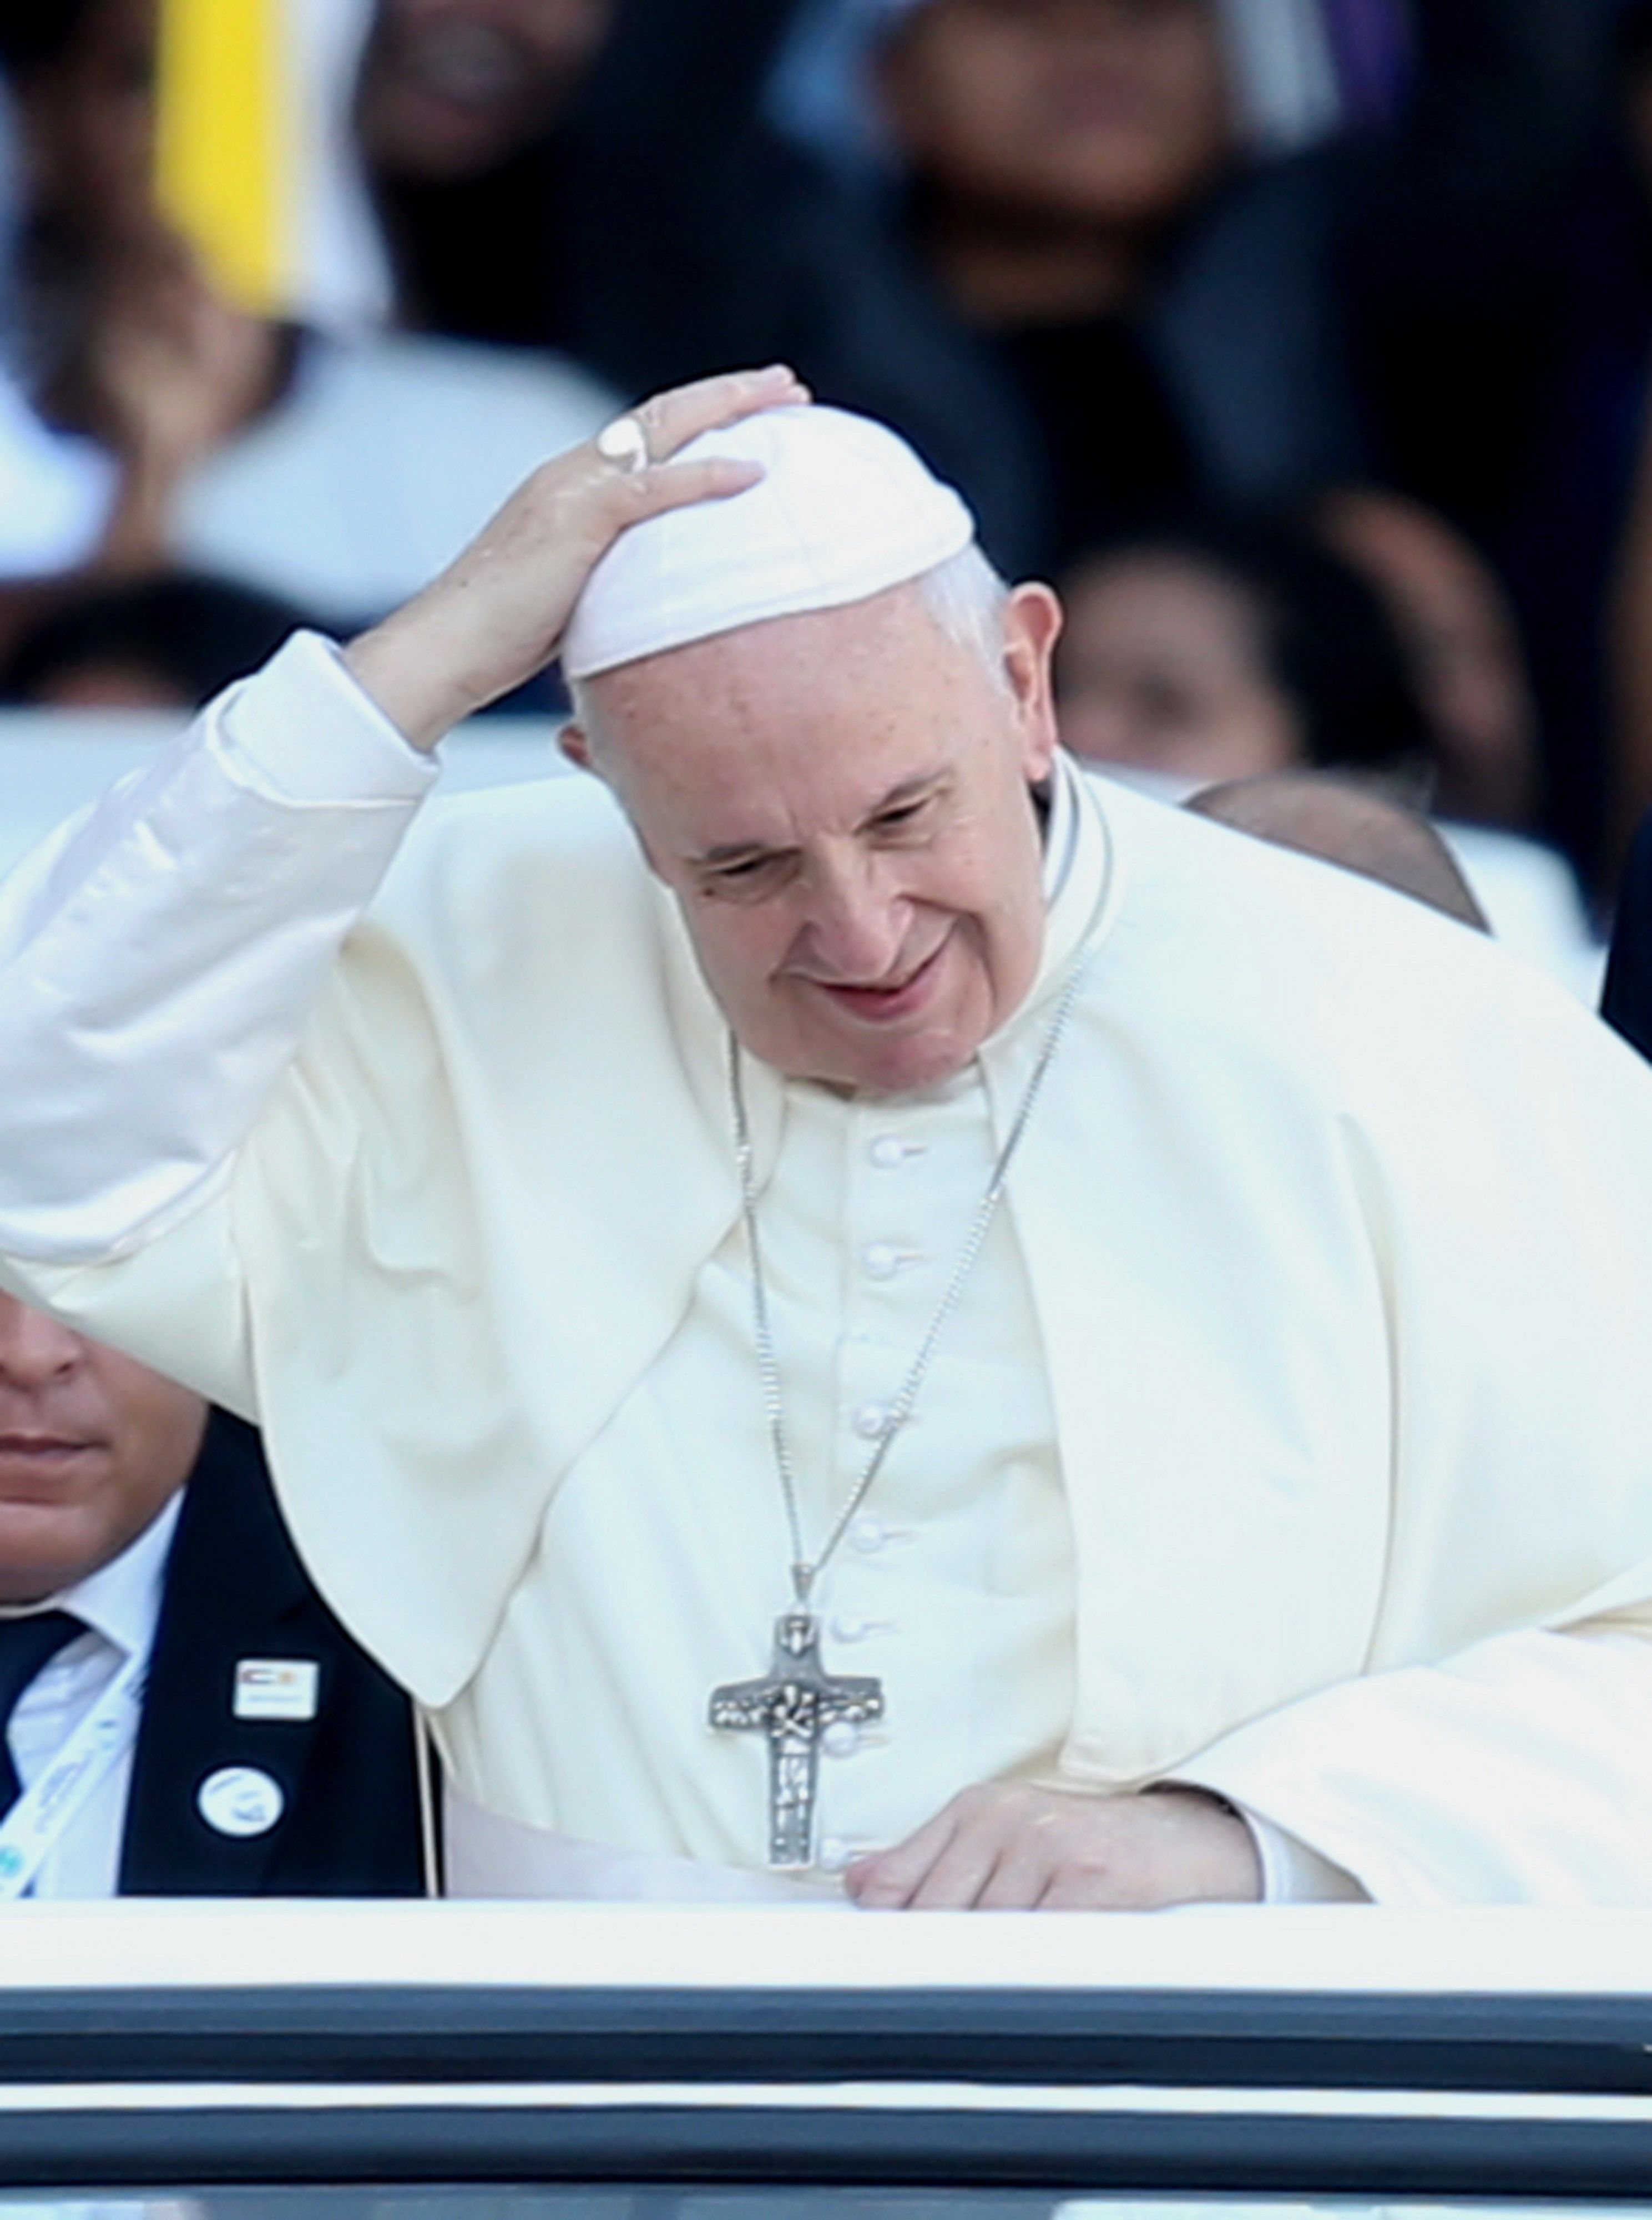 El papa Francisco sale del hospital de buen humor: "Estoy todavía vivo"